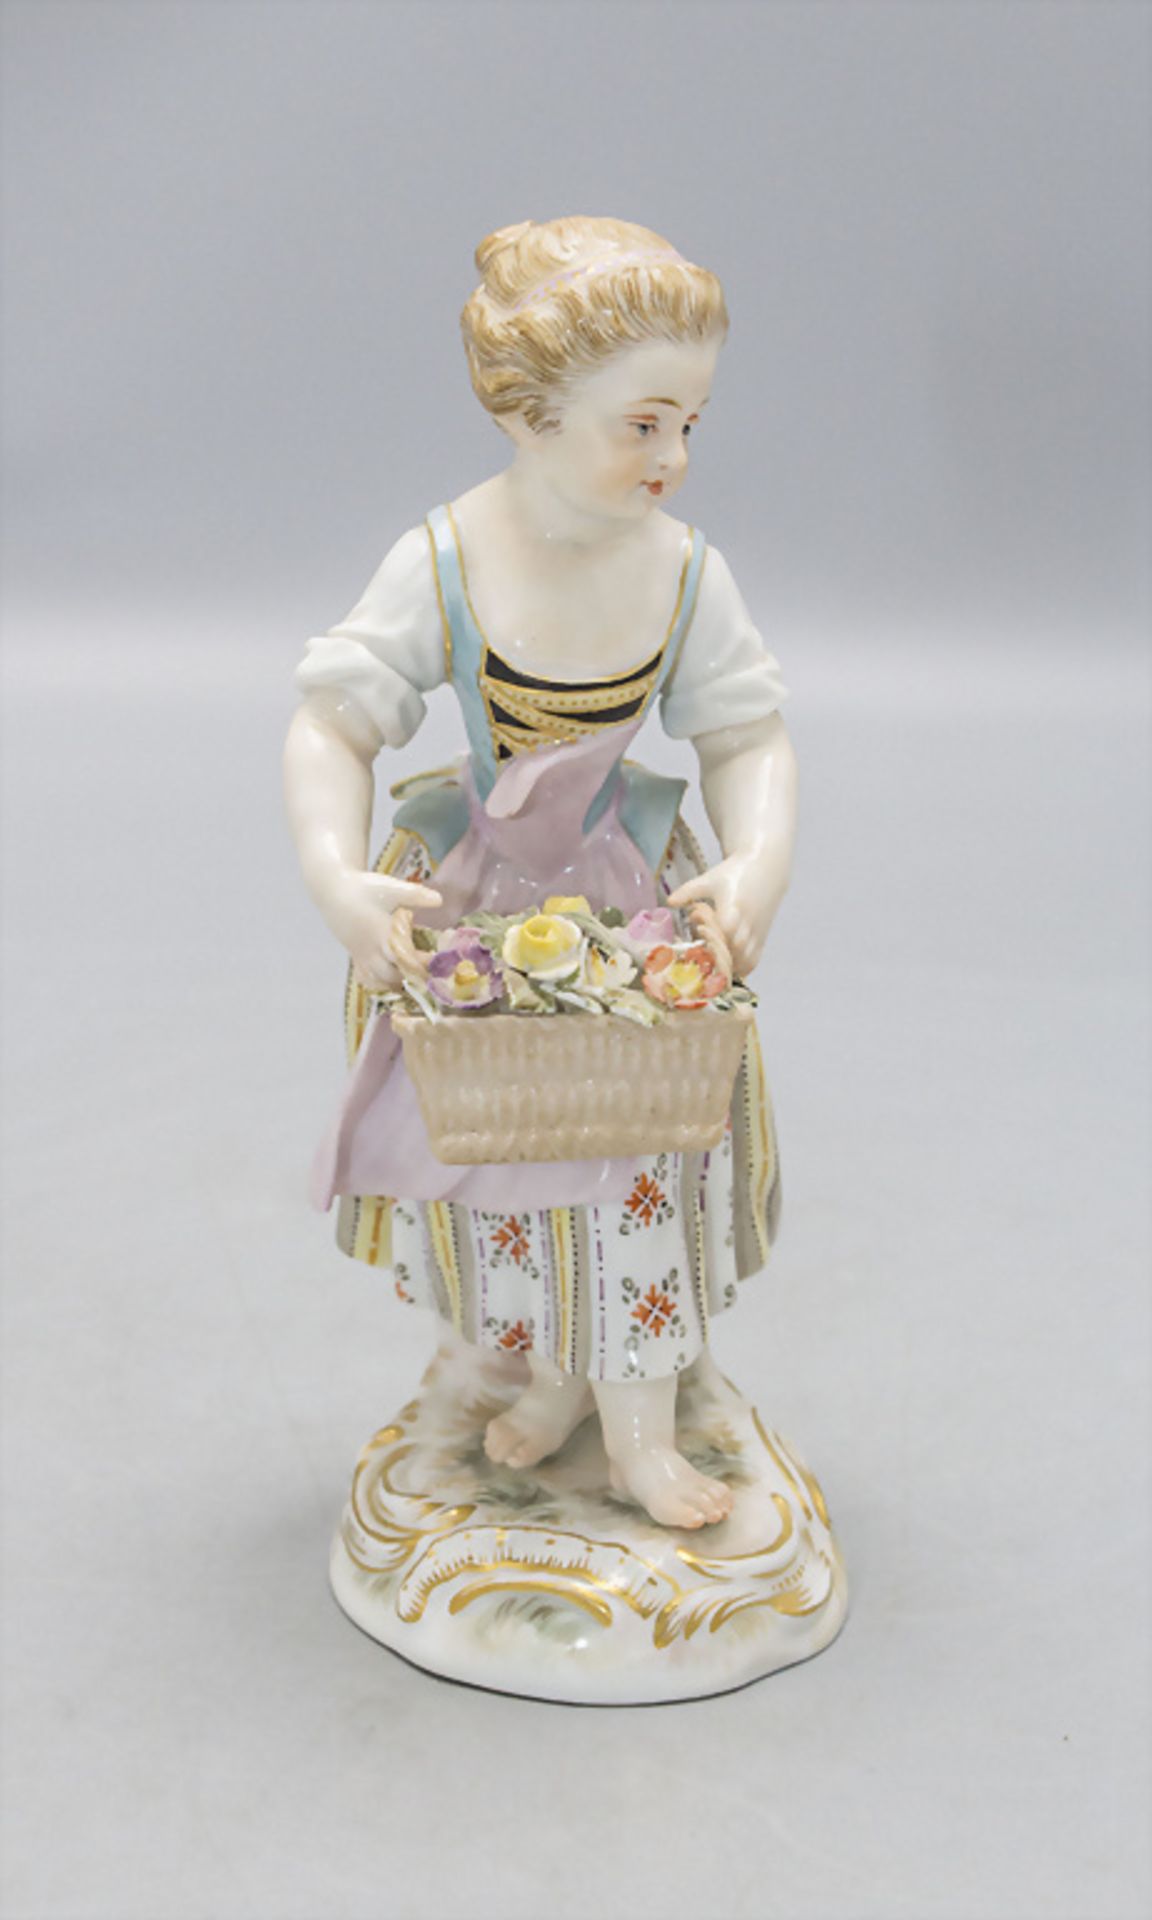 Gärtnerkind 'Mädchen mit Blumenkorb' / A gardener's child 'girl with flower basket', Meissen, ... - Image 2 of 4